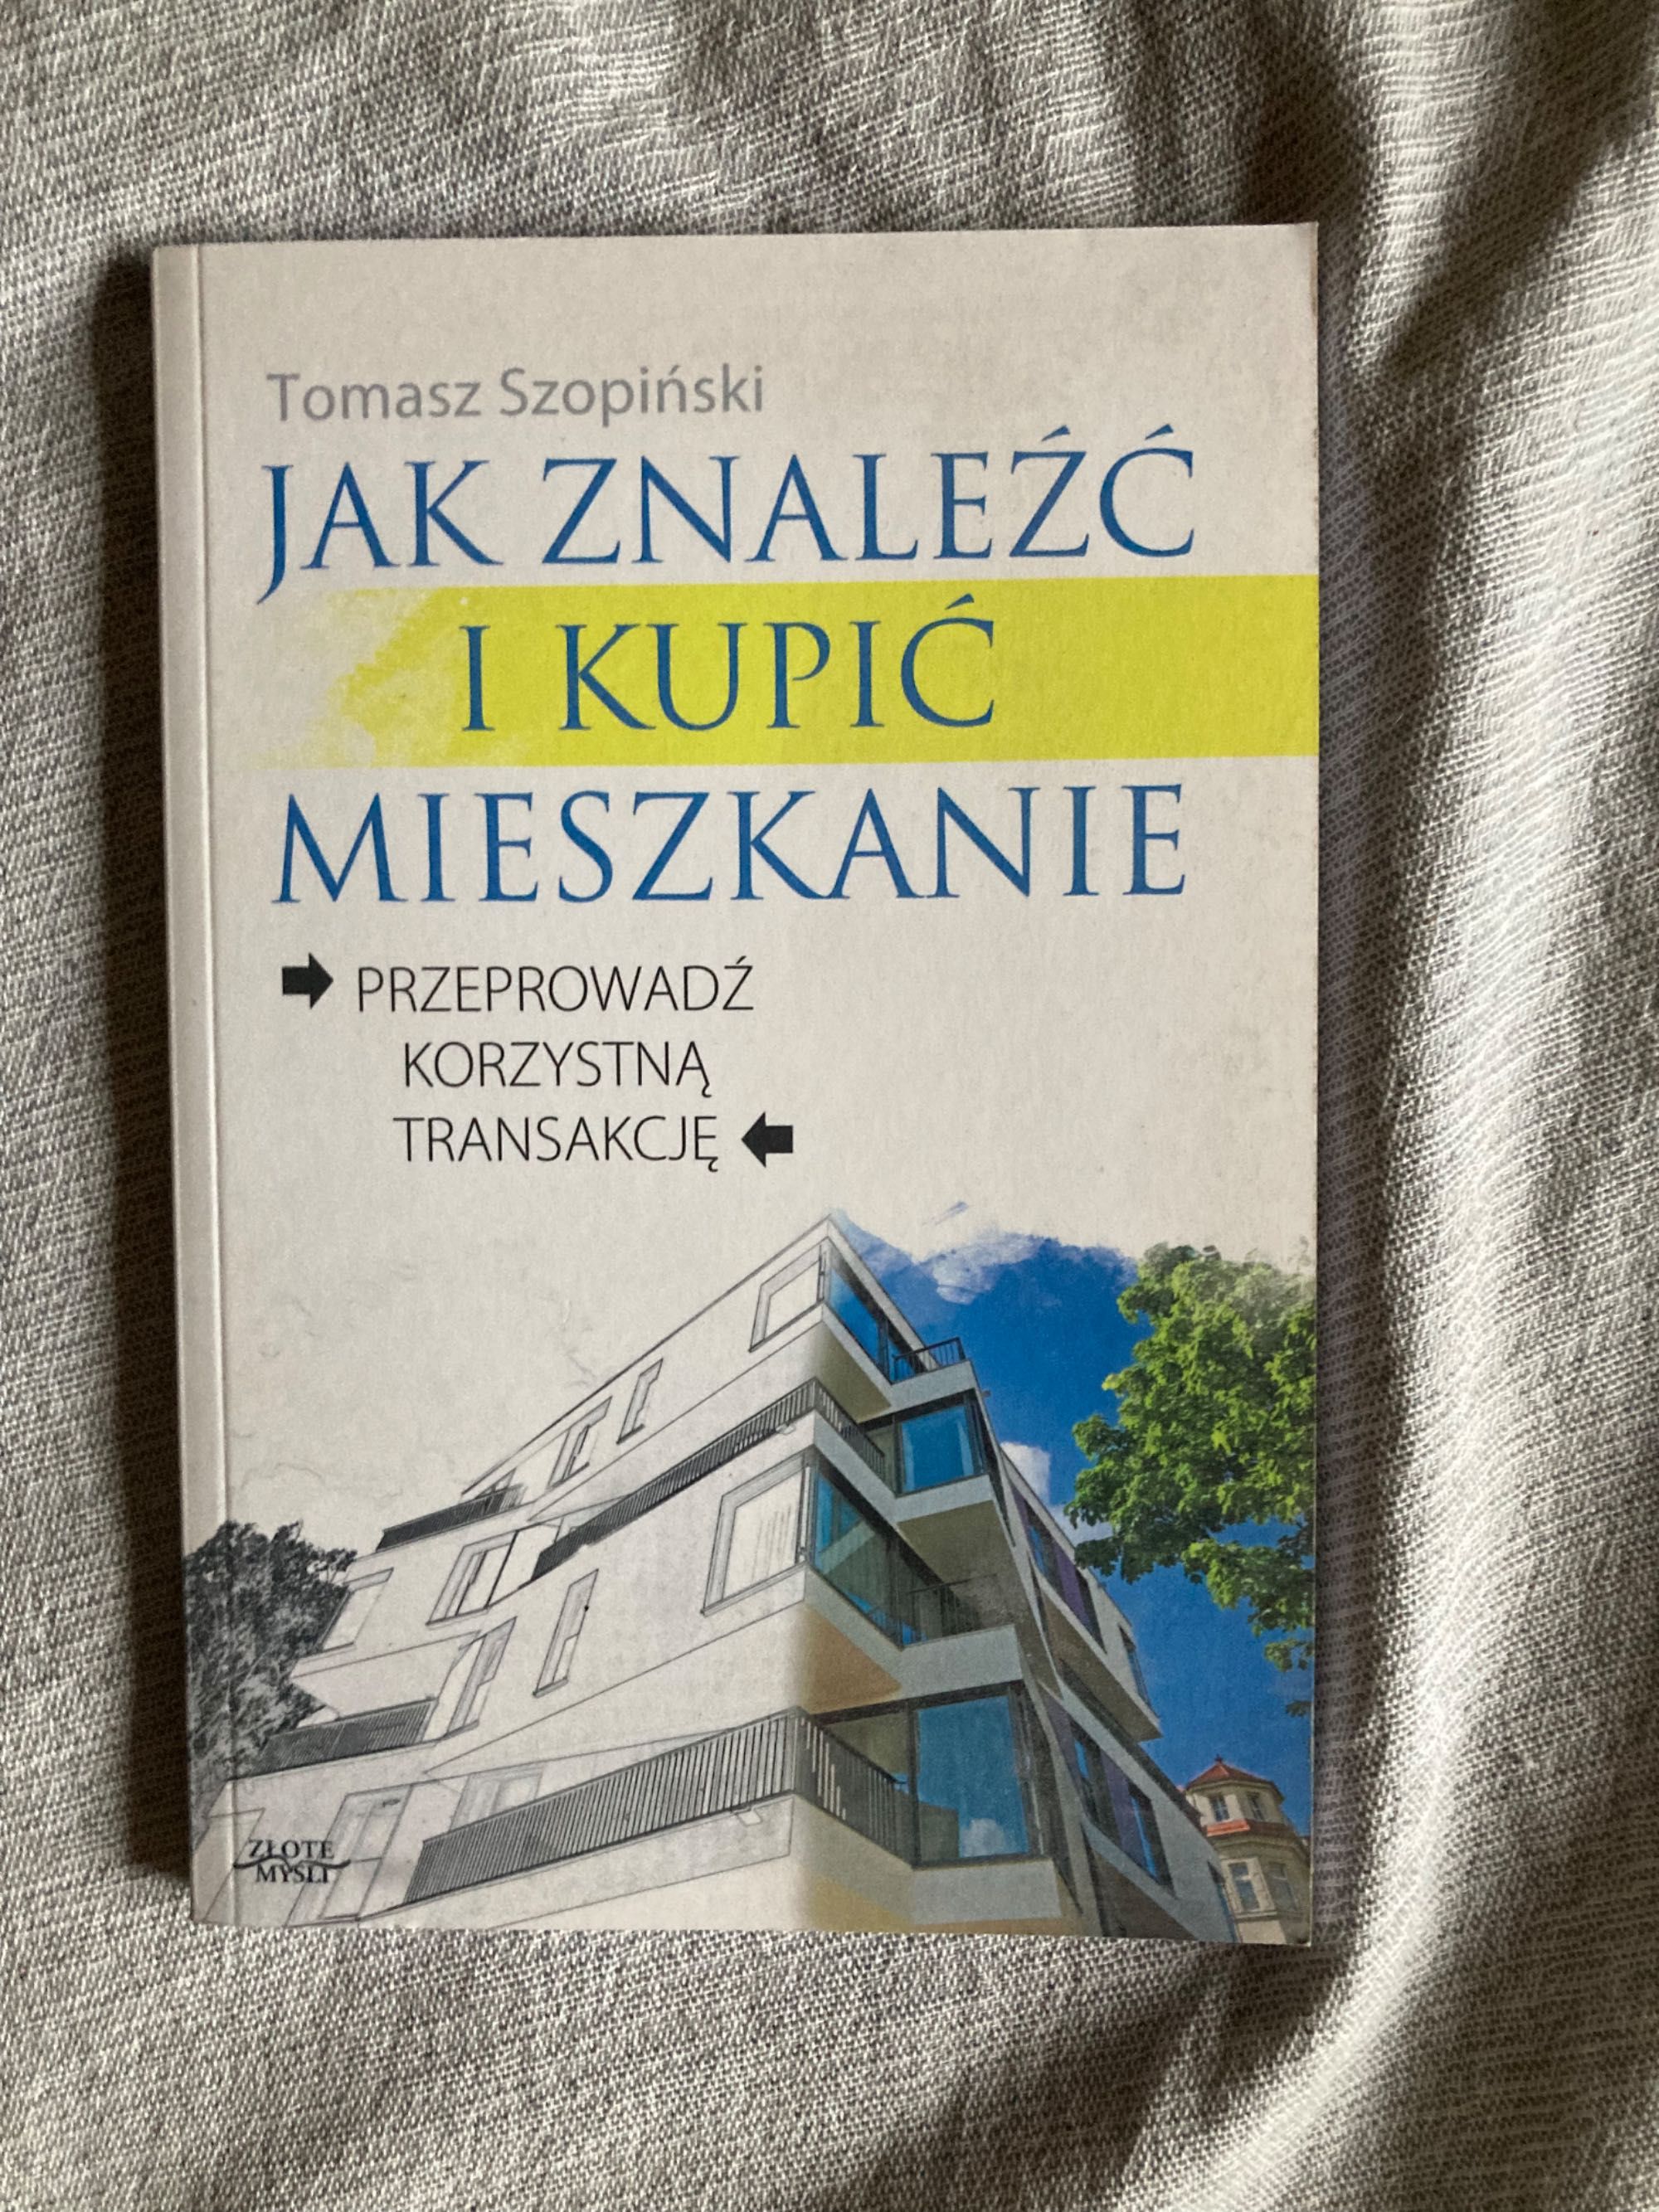 Książka „Jak znaleźć i kupić mieszkanie” Tomasz Szopiński